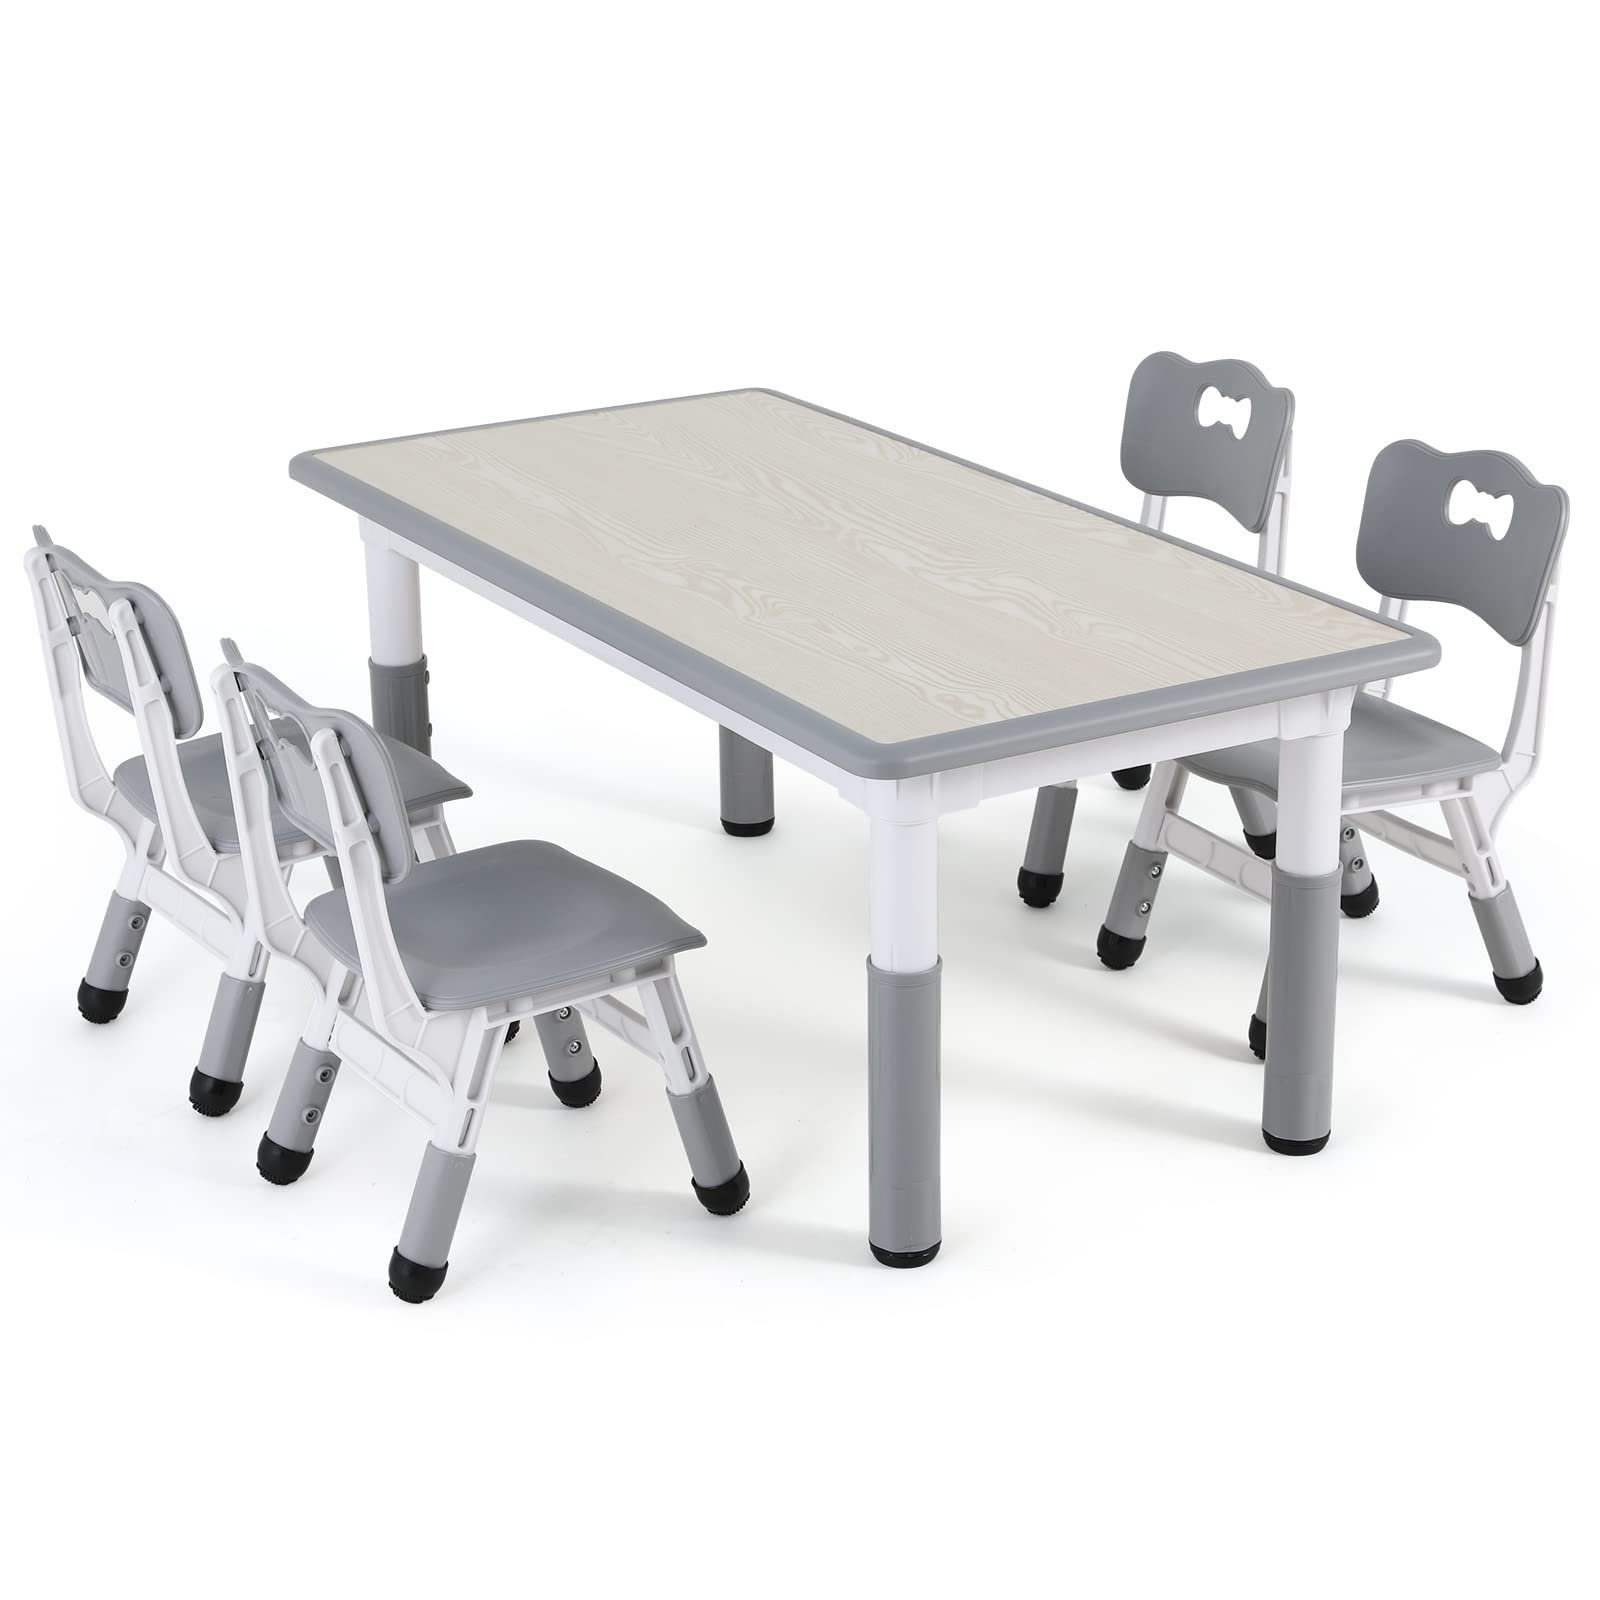 TLGREEN Kindersitzgruppe Kindertisch mit 4 Stühlen, Дитячі меблі, Quadratischen Tisch Höhenverstellbar Plastik